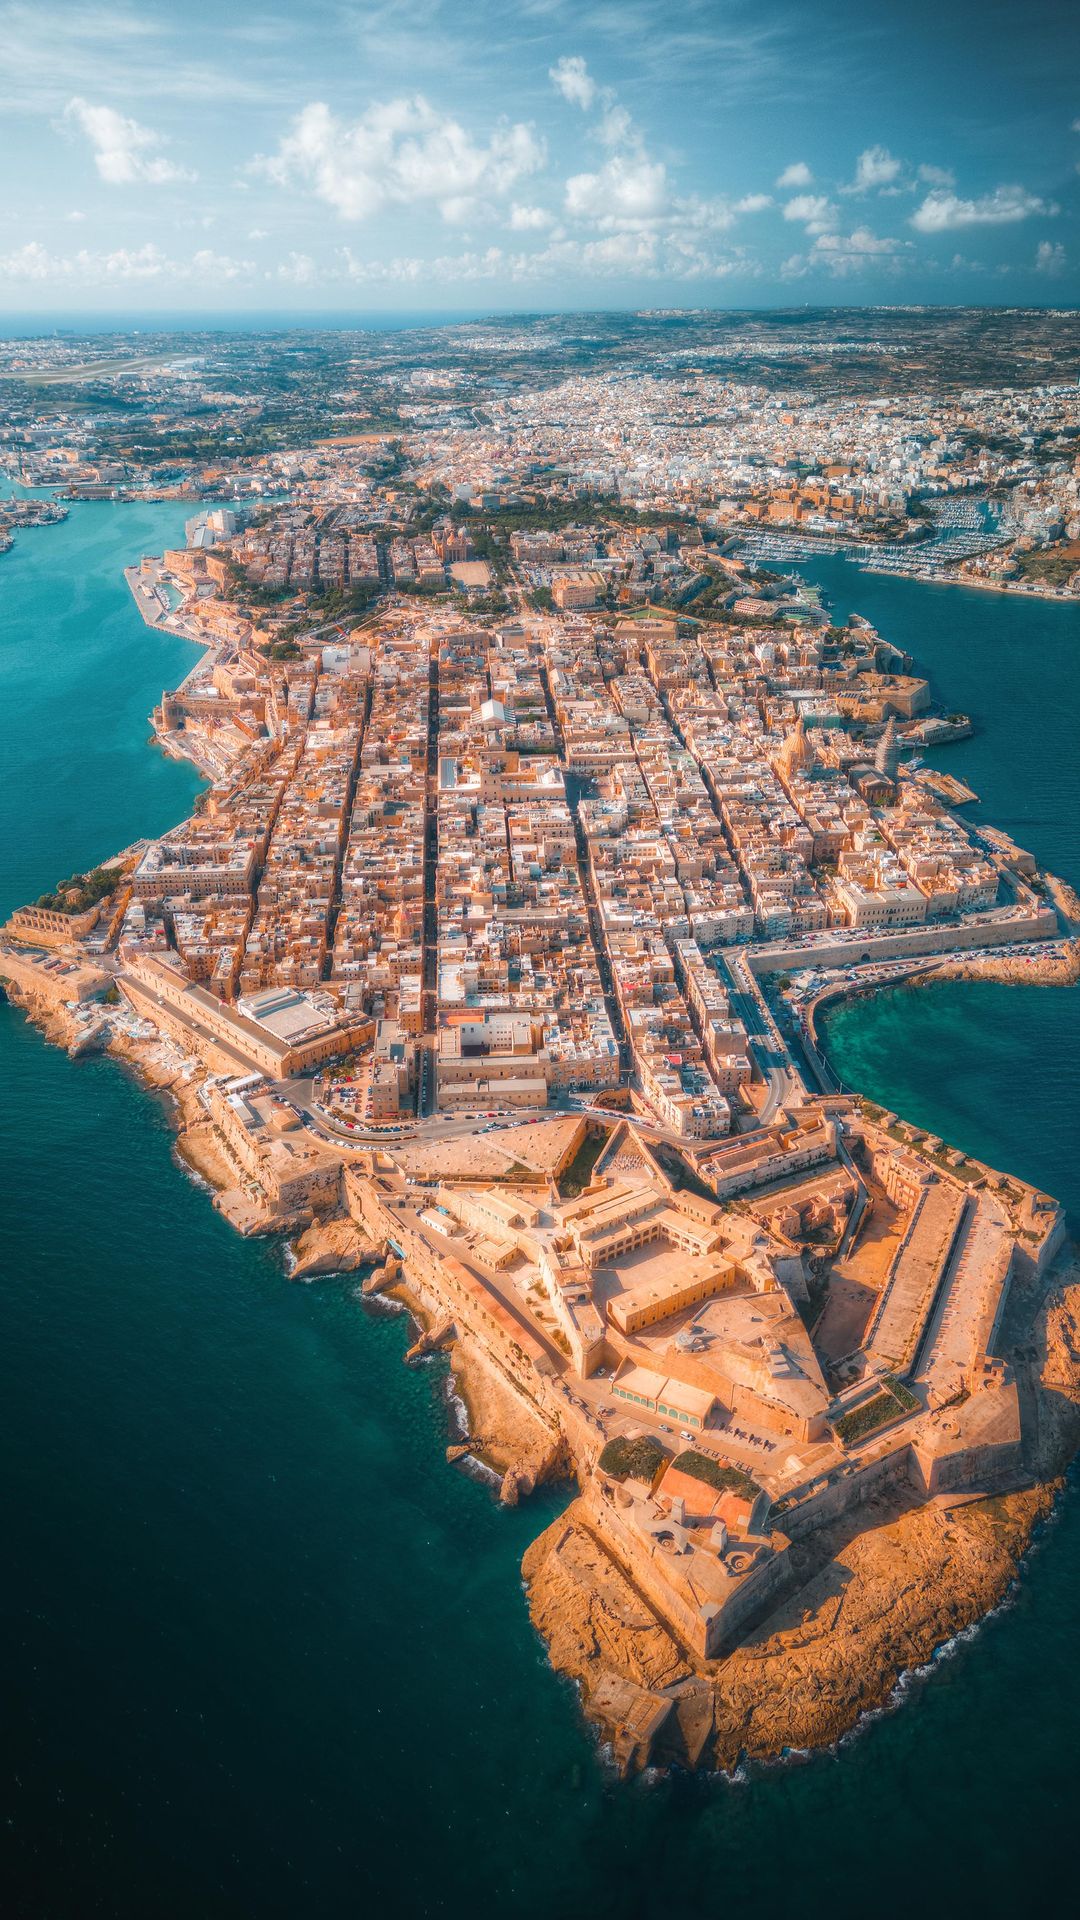 2-Day Exploration of Valletta, Malta